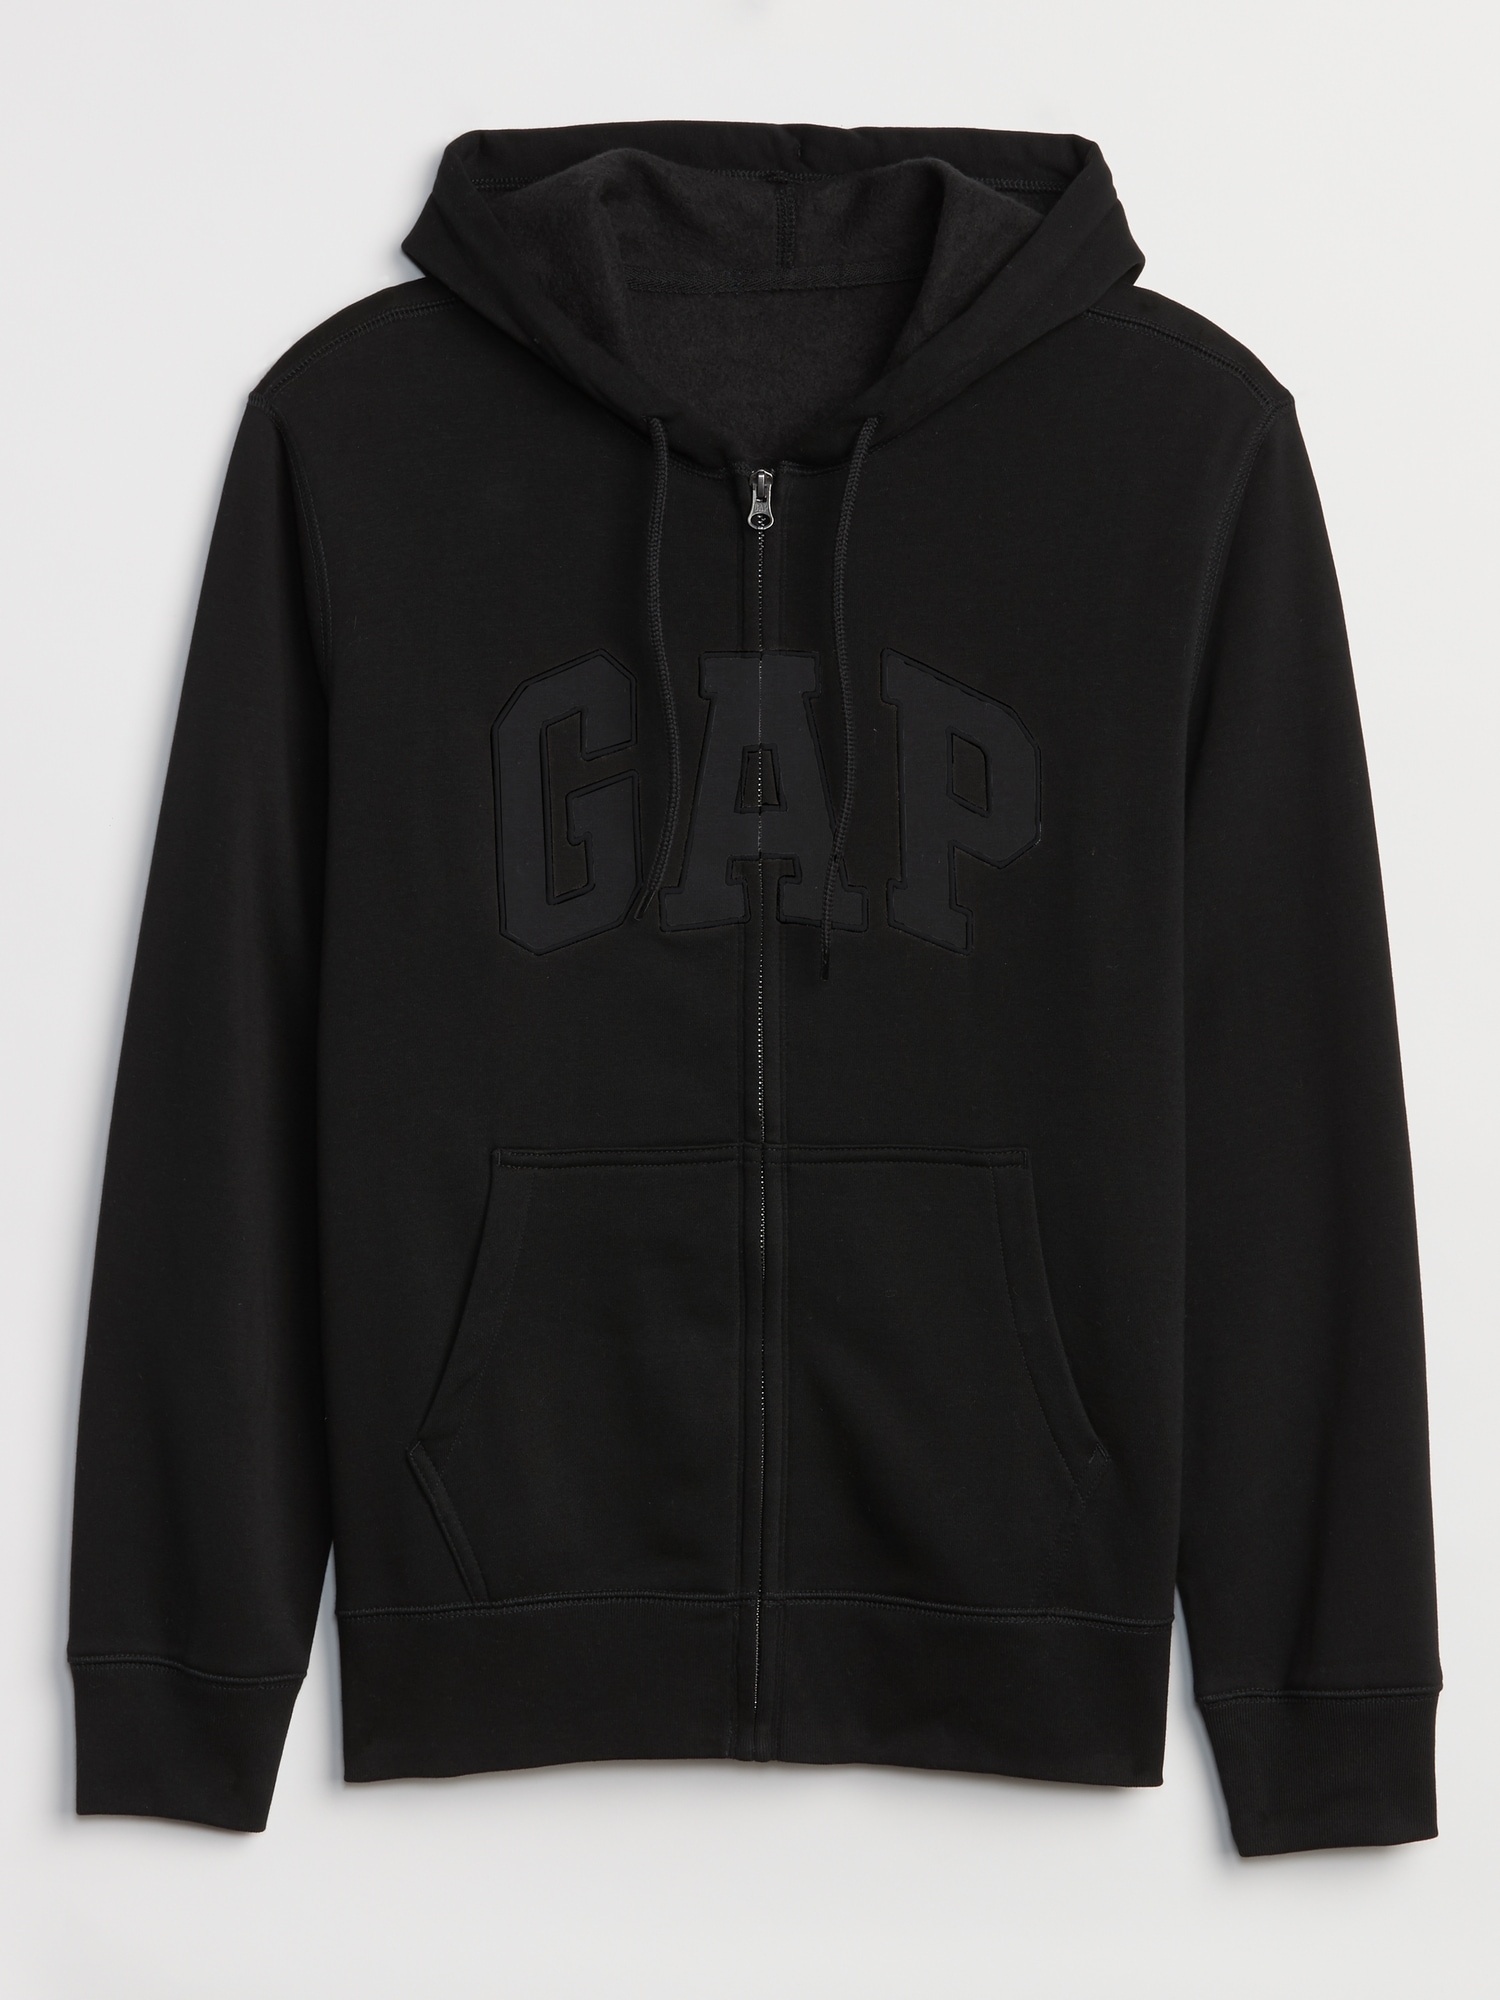 Gap vintage grey big logo embroidered hooded jacket hoodie